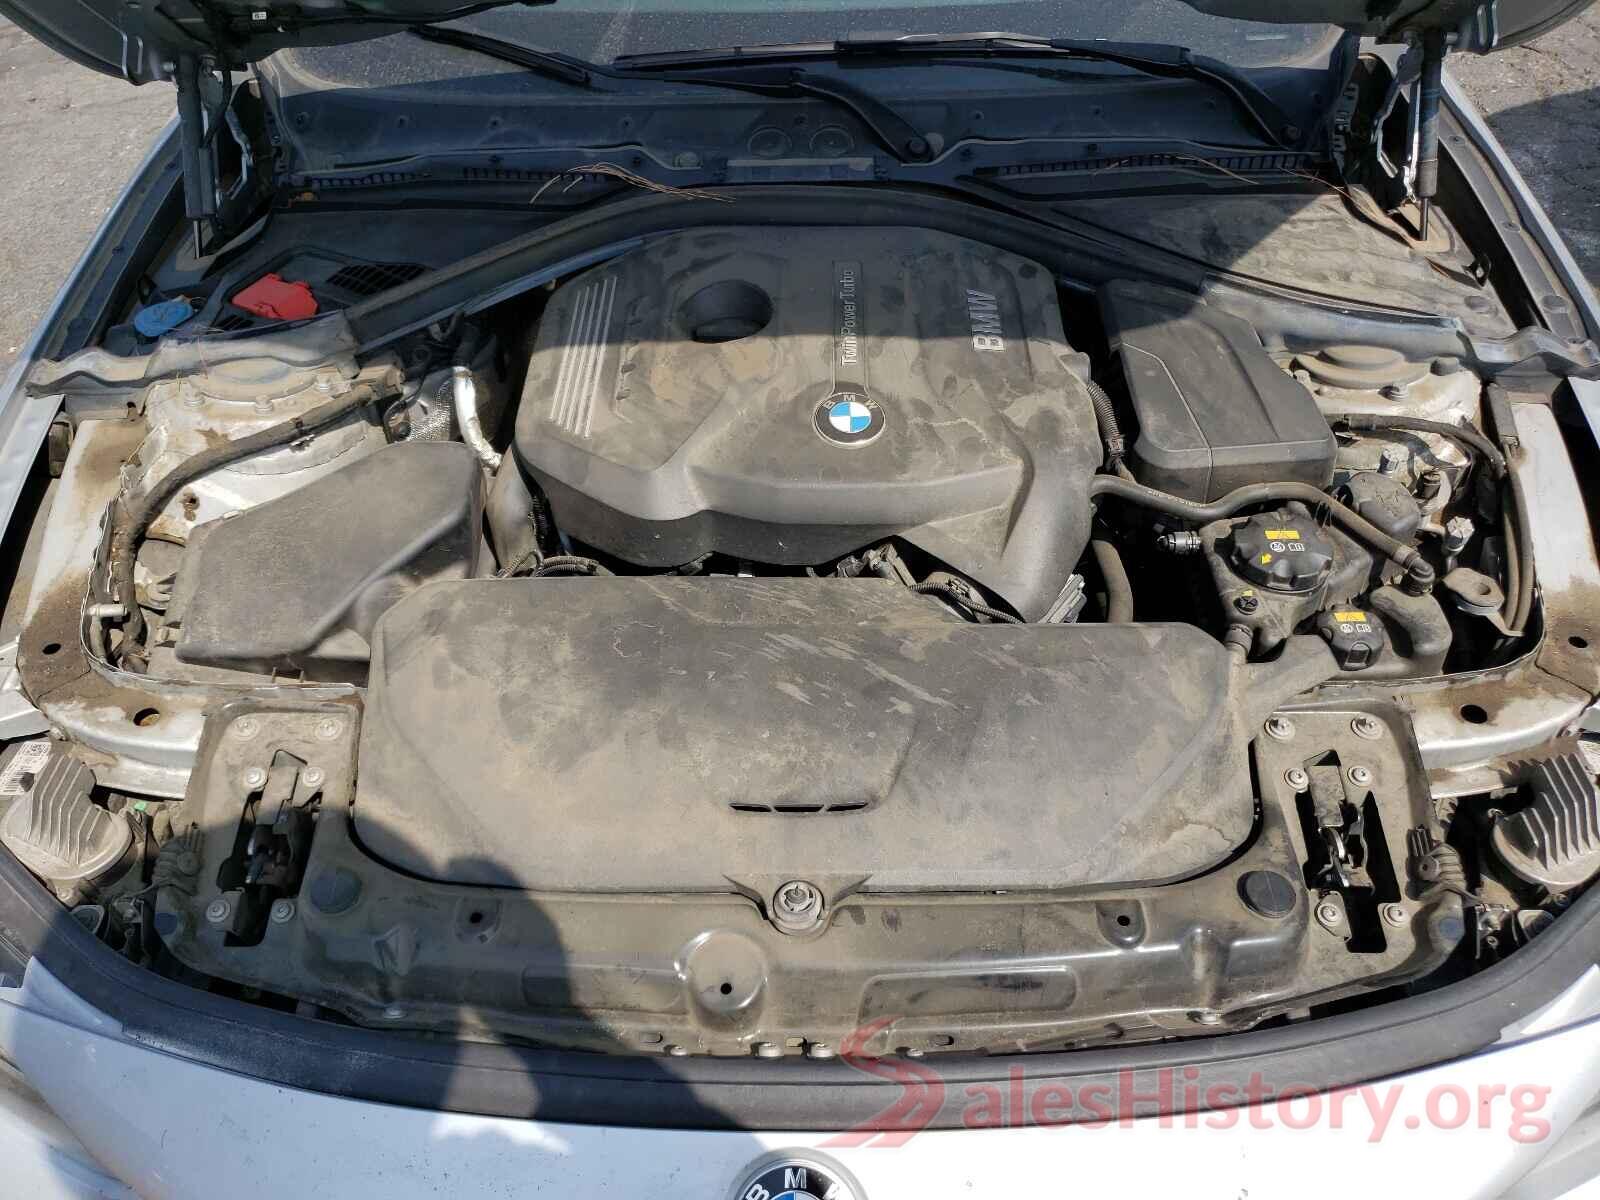 WBA4J1C57JBG78455 2018 BMW 4 SERIES